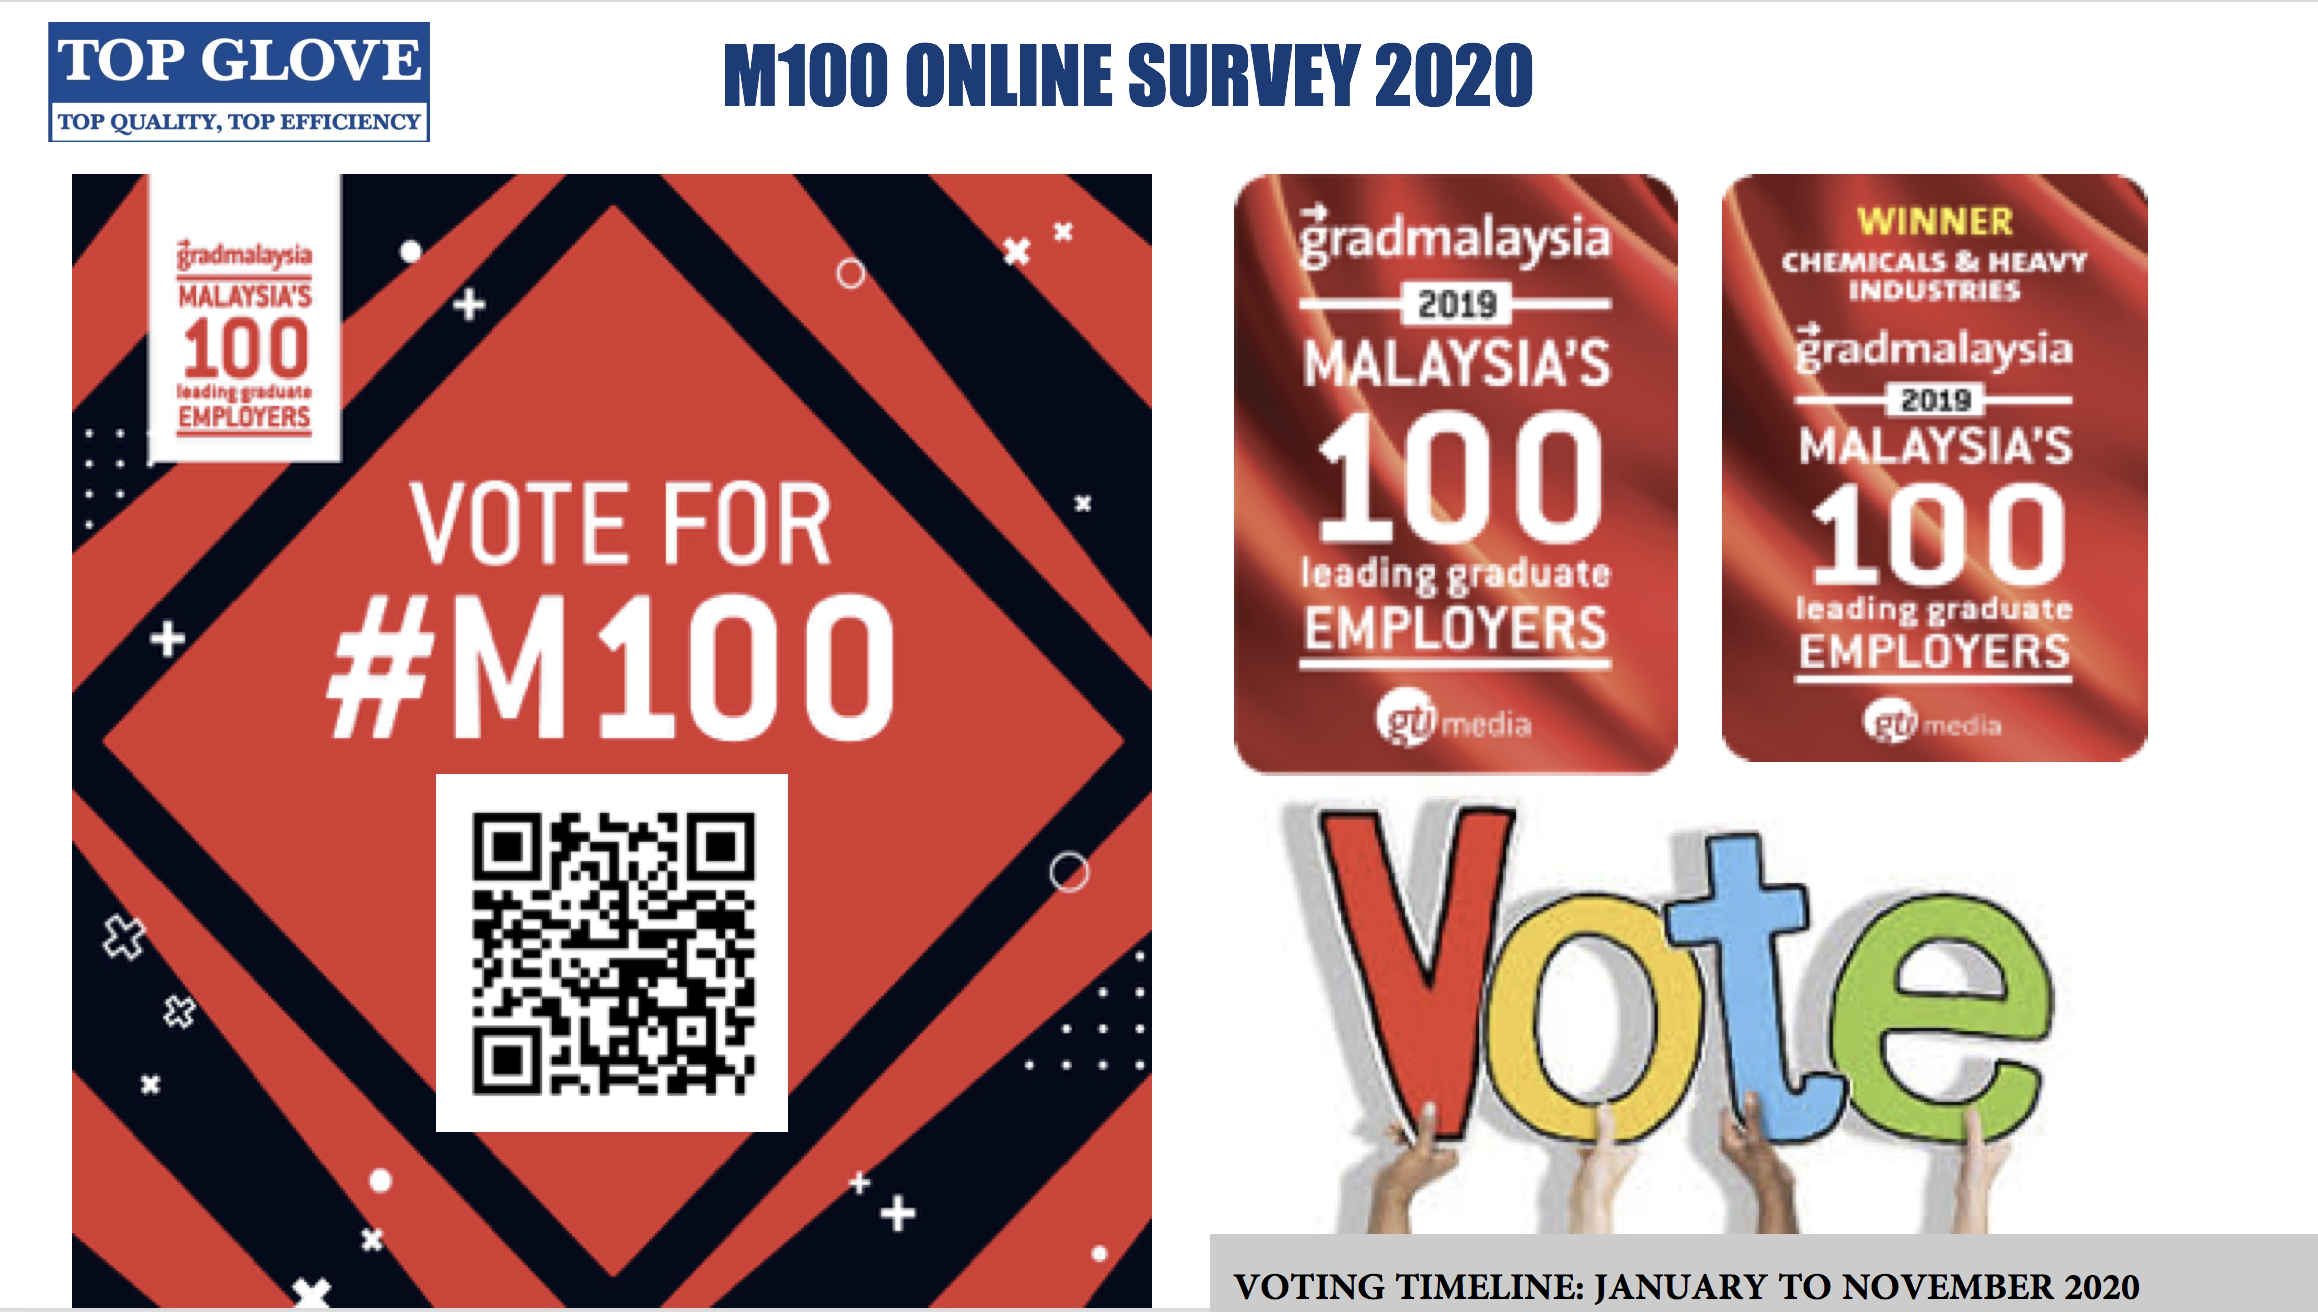 http://gradmalaysia.m100-2020-survey.sgizmo.com/s3/